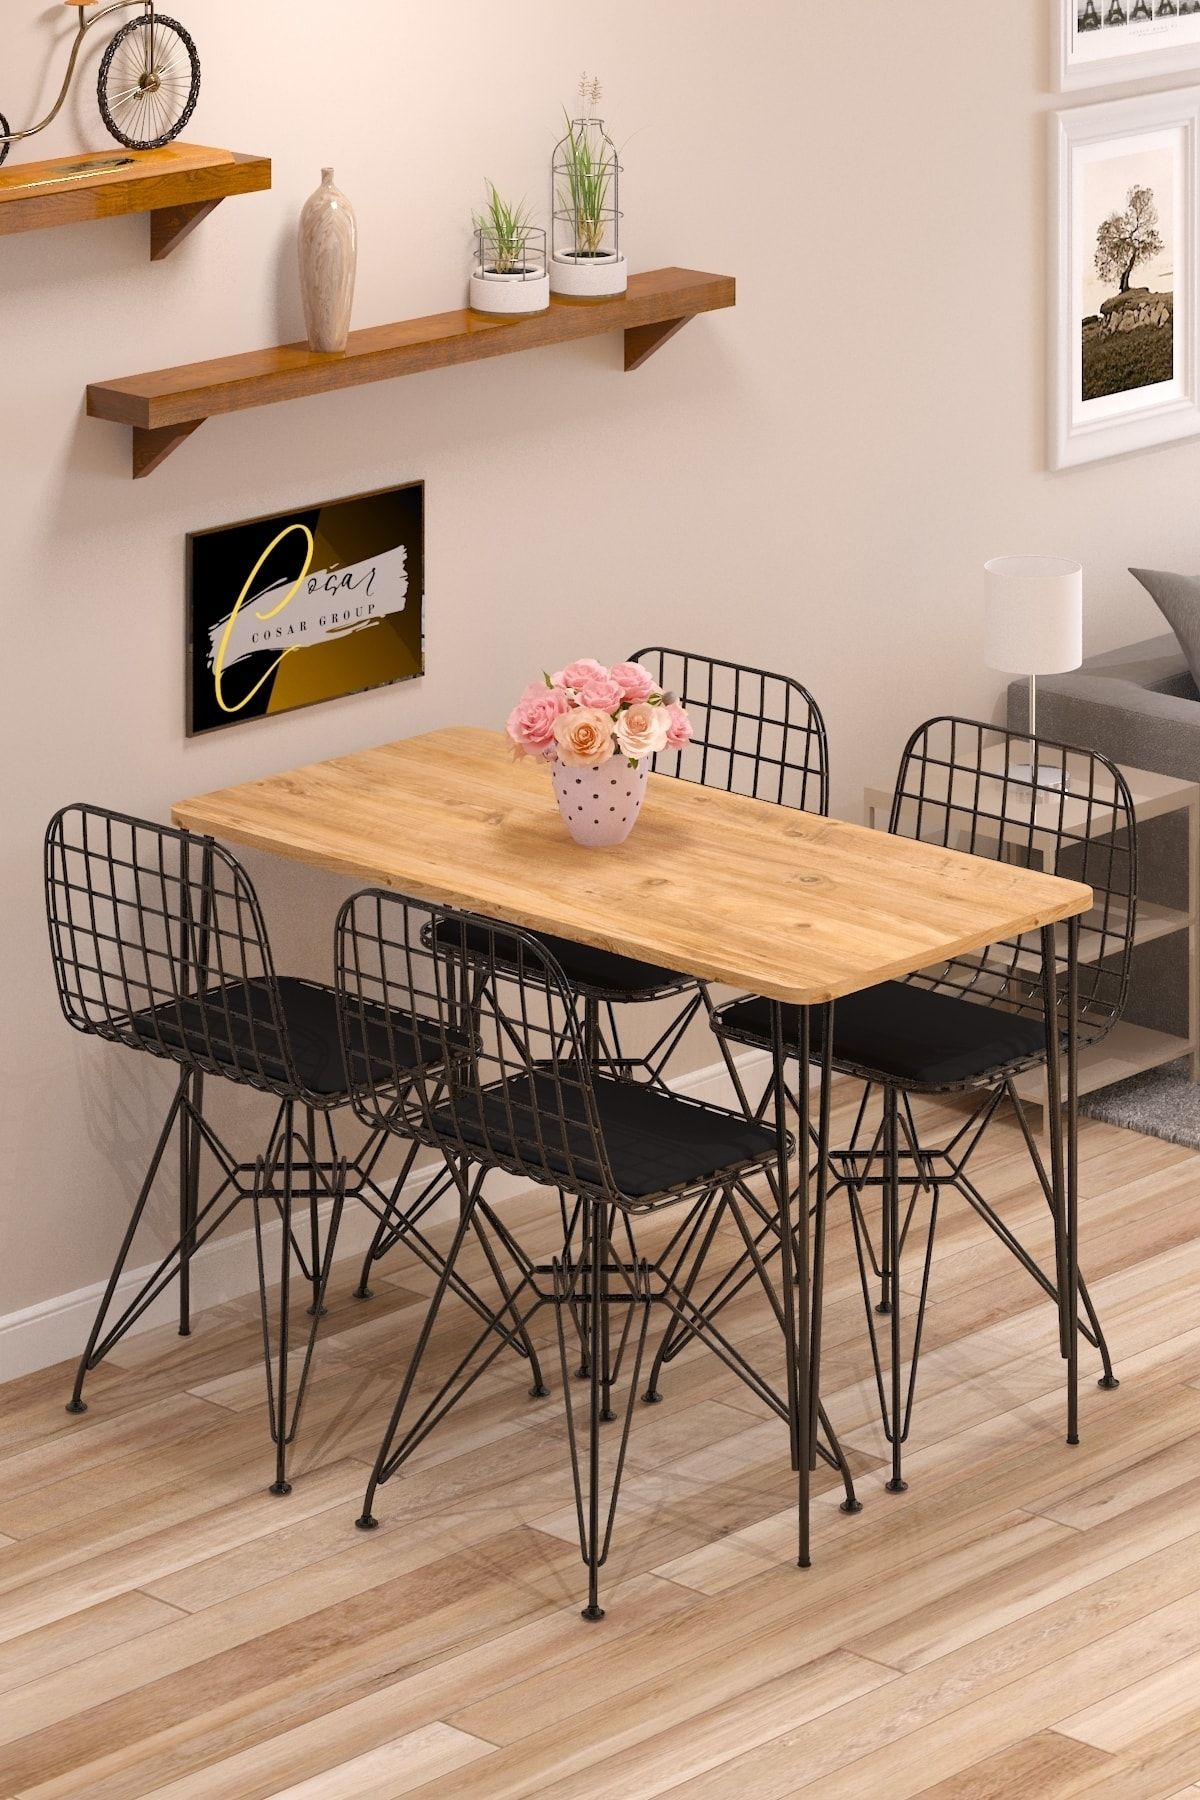 Cosargroup Yemek Masa Takımı Mutfak Masası Cafe Masası 4 Adet Tel Sandalye 1 Adet Masa 60x120 Atlantik Çam